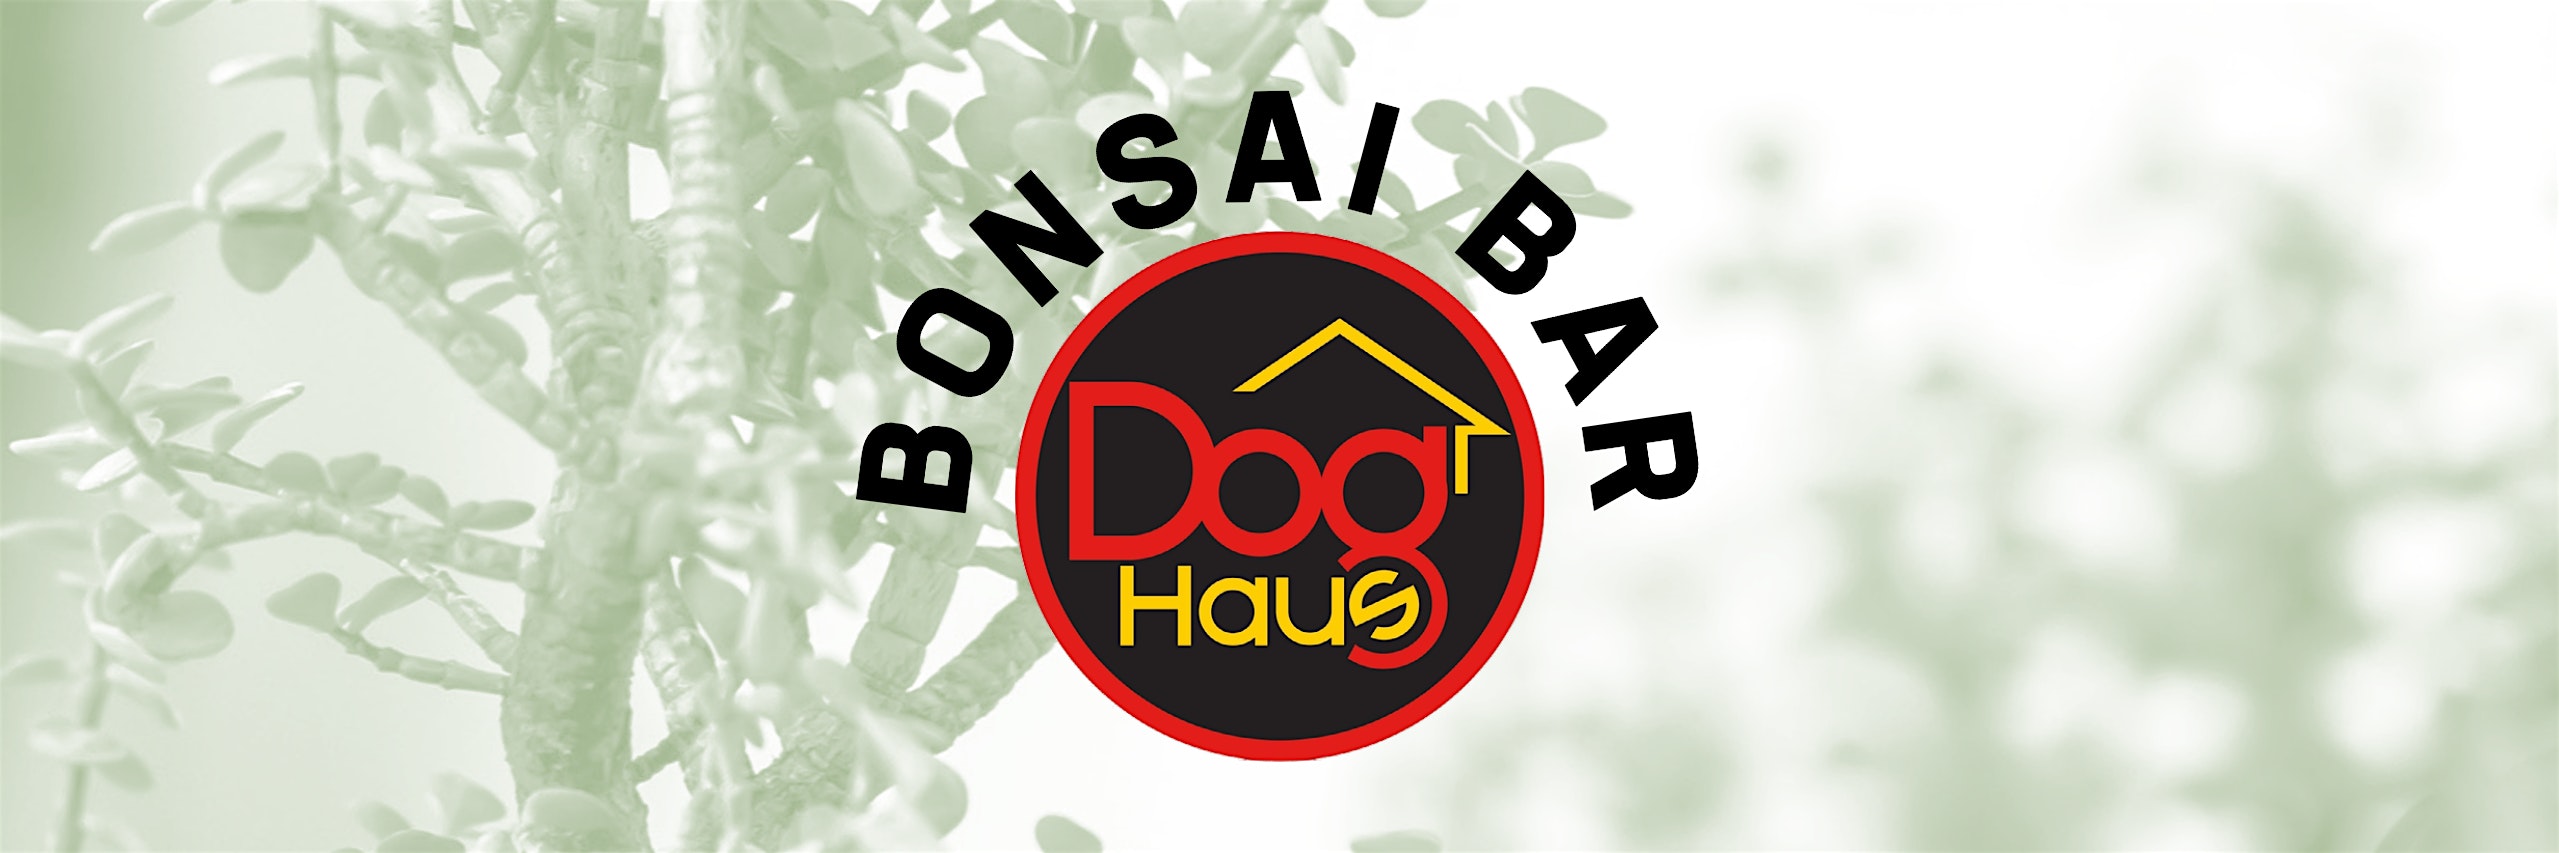 Bonsai Bar @ Dog Haus Biergarten – Clifton Park